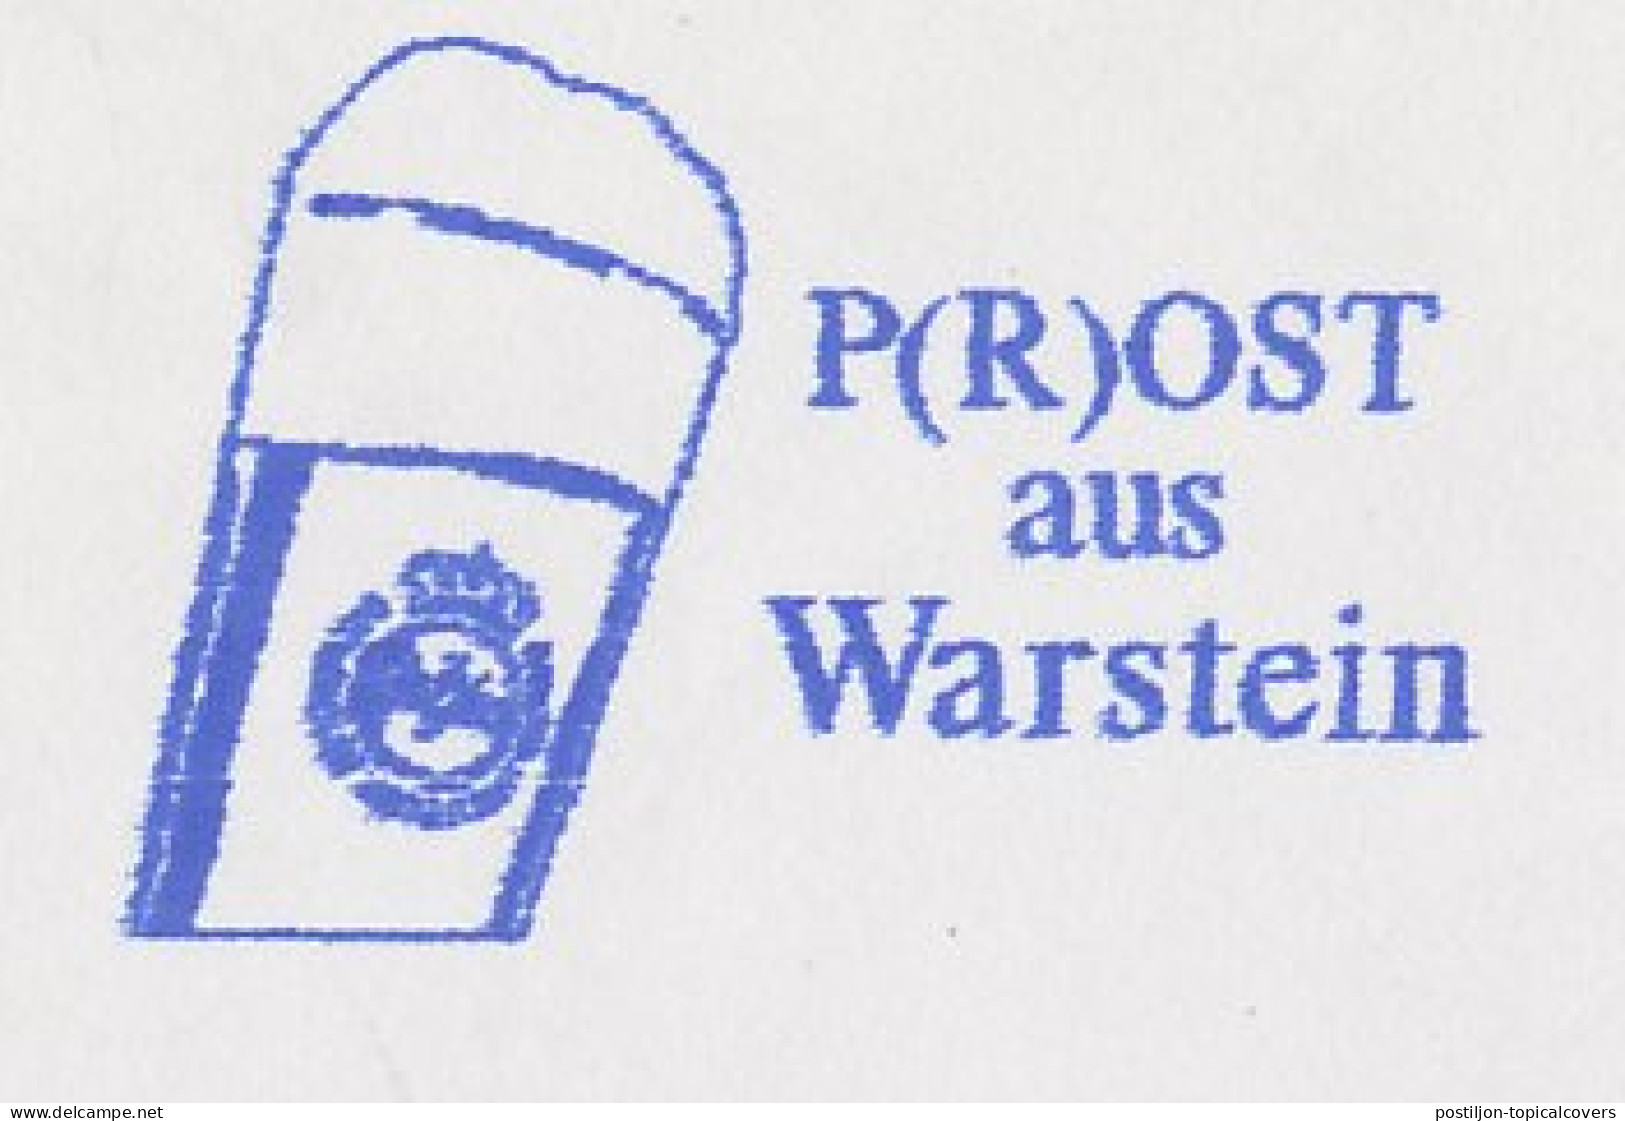 Meter Top Cut Germany 2002 Beer - Warsteiner - Wijn & Sterke Drank